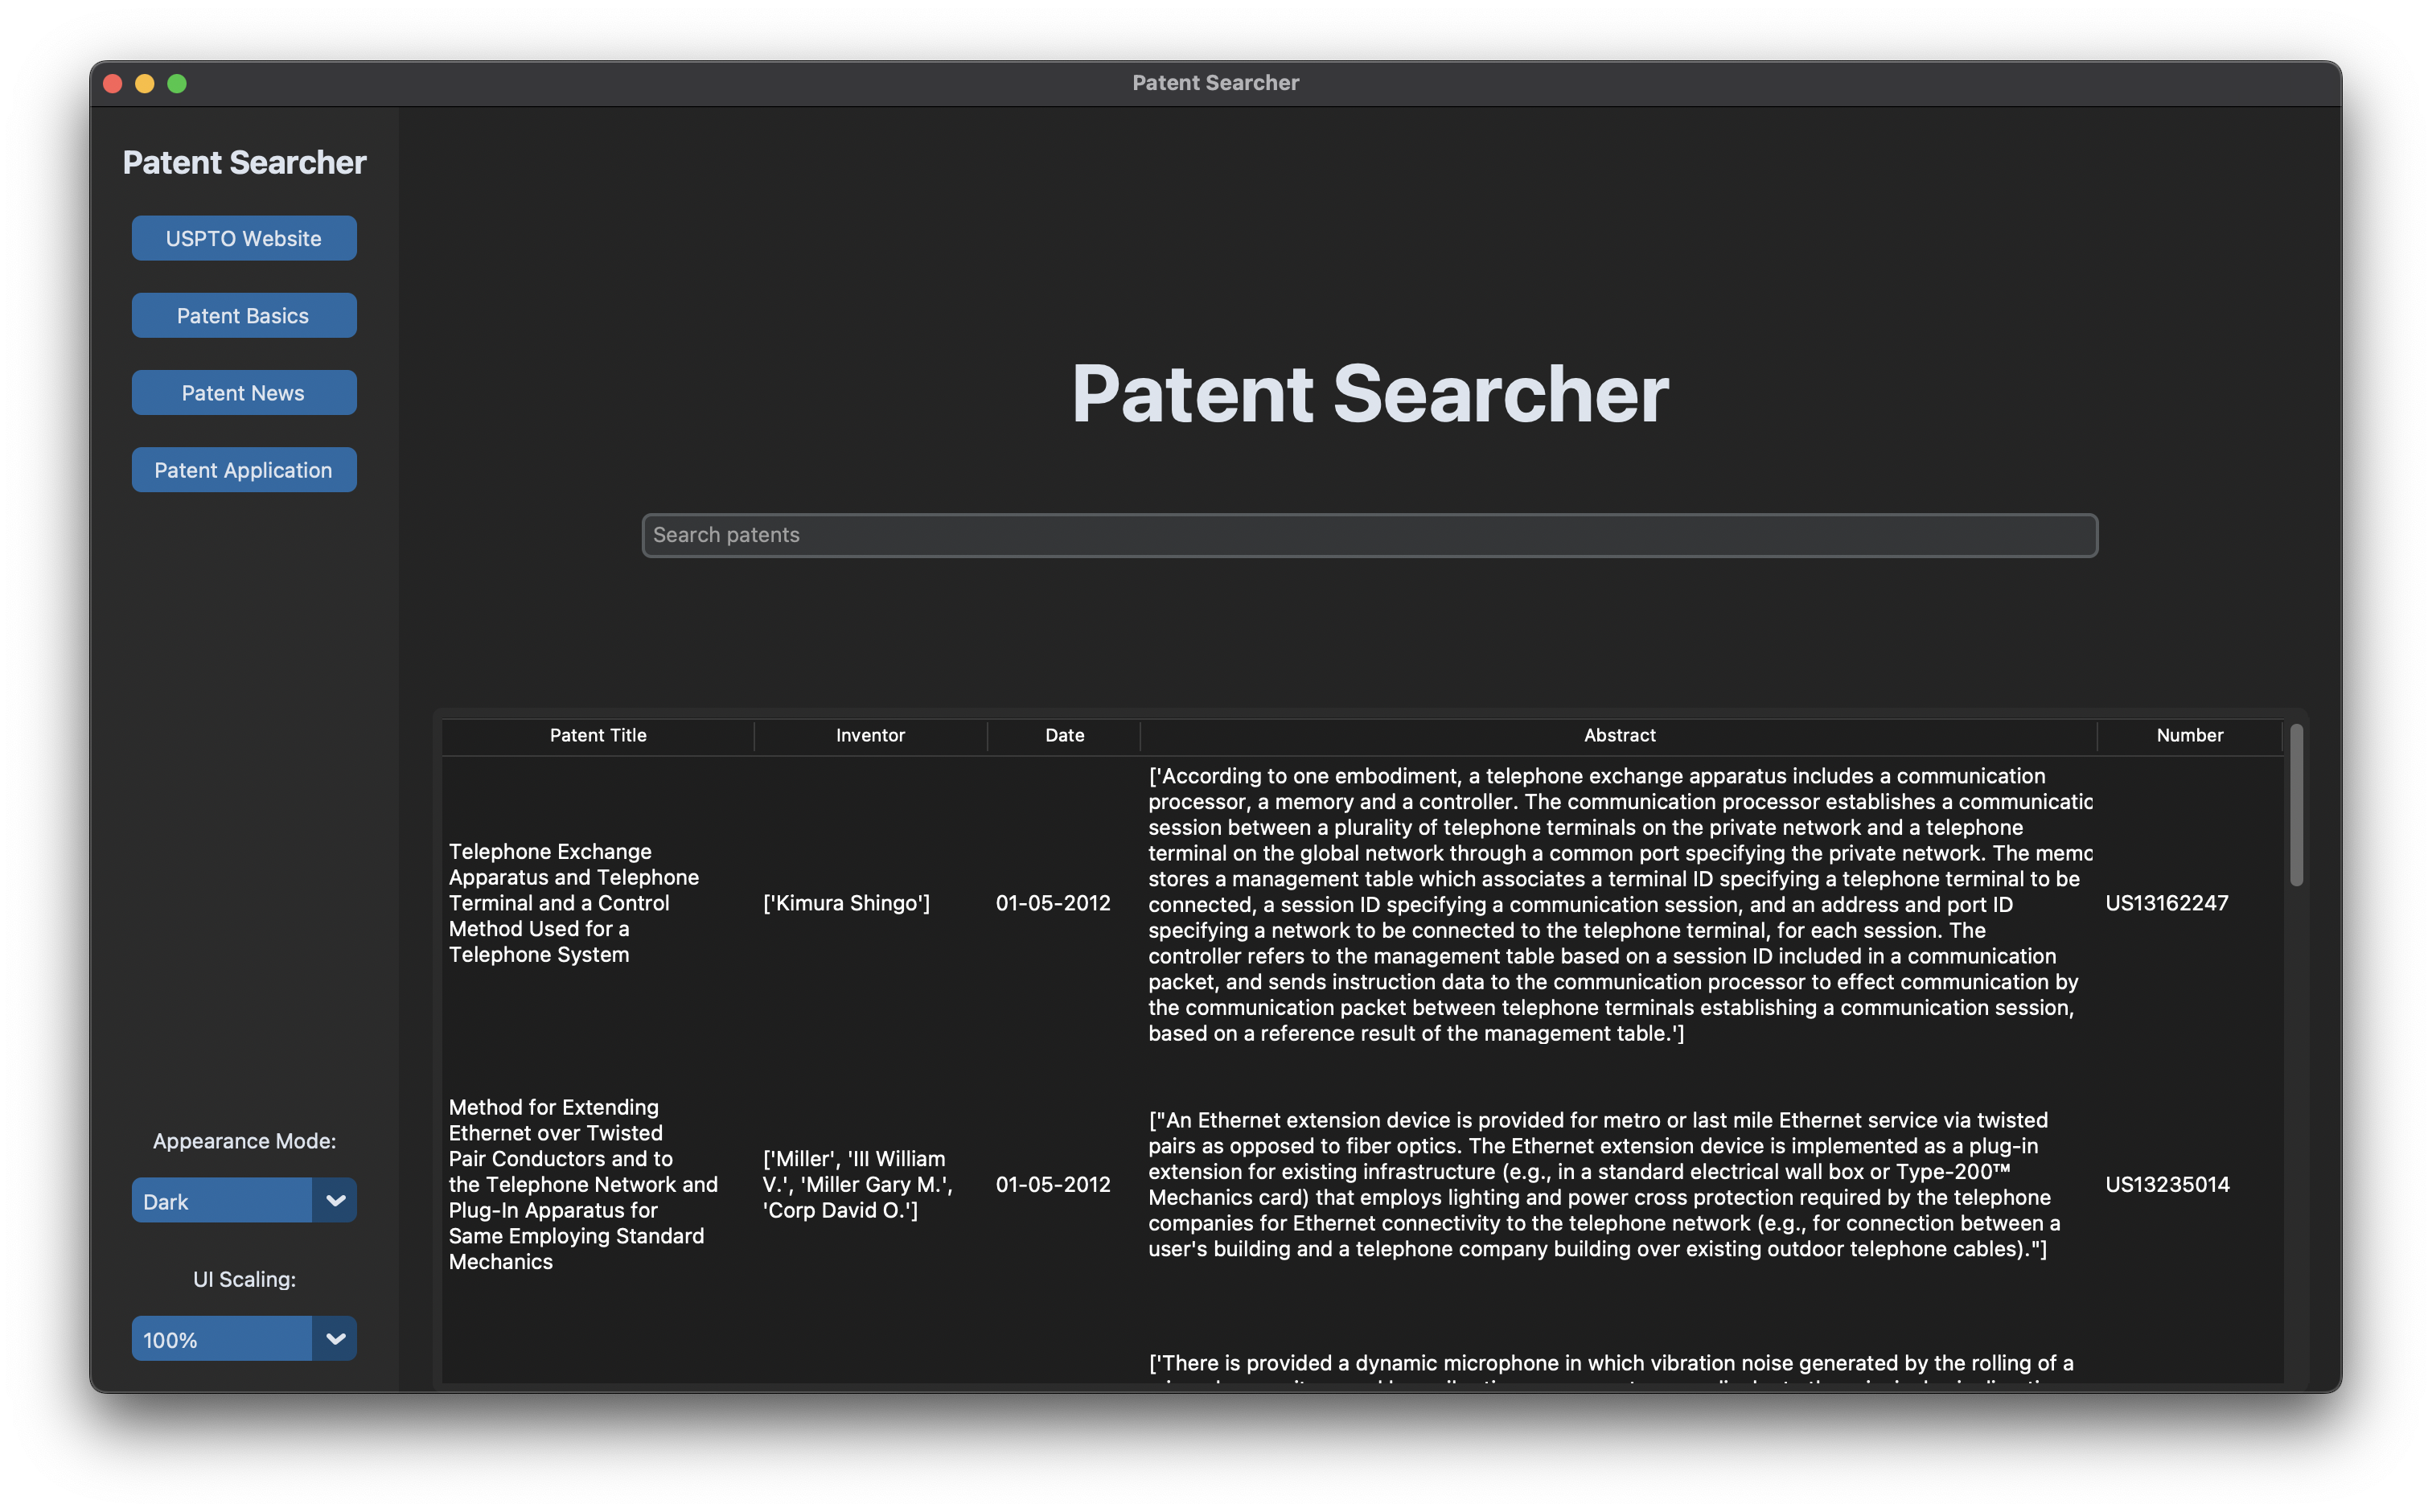 Patent Searcher GUI Image